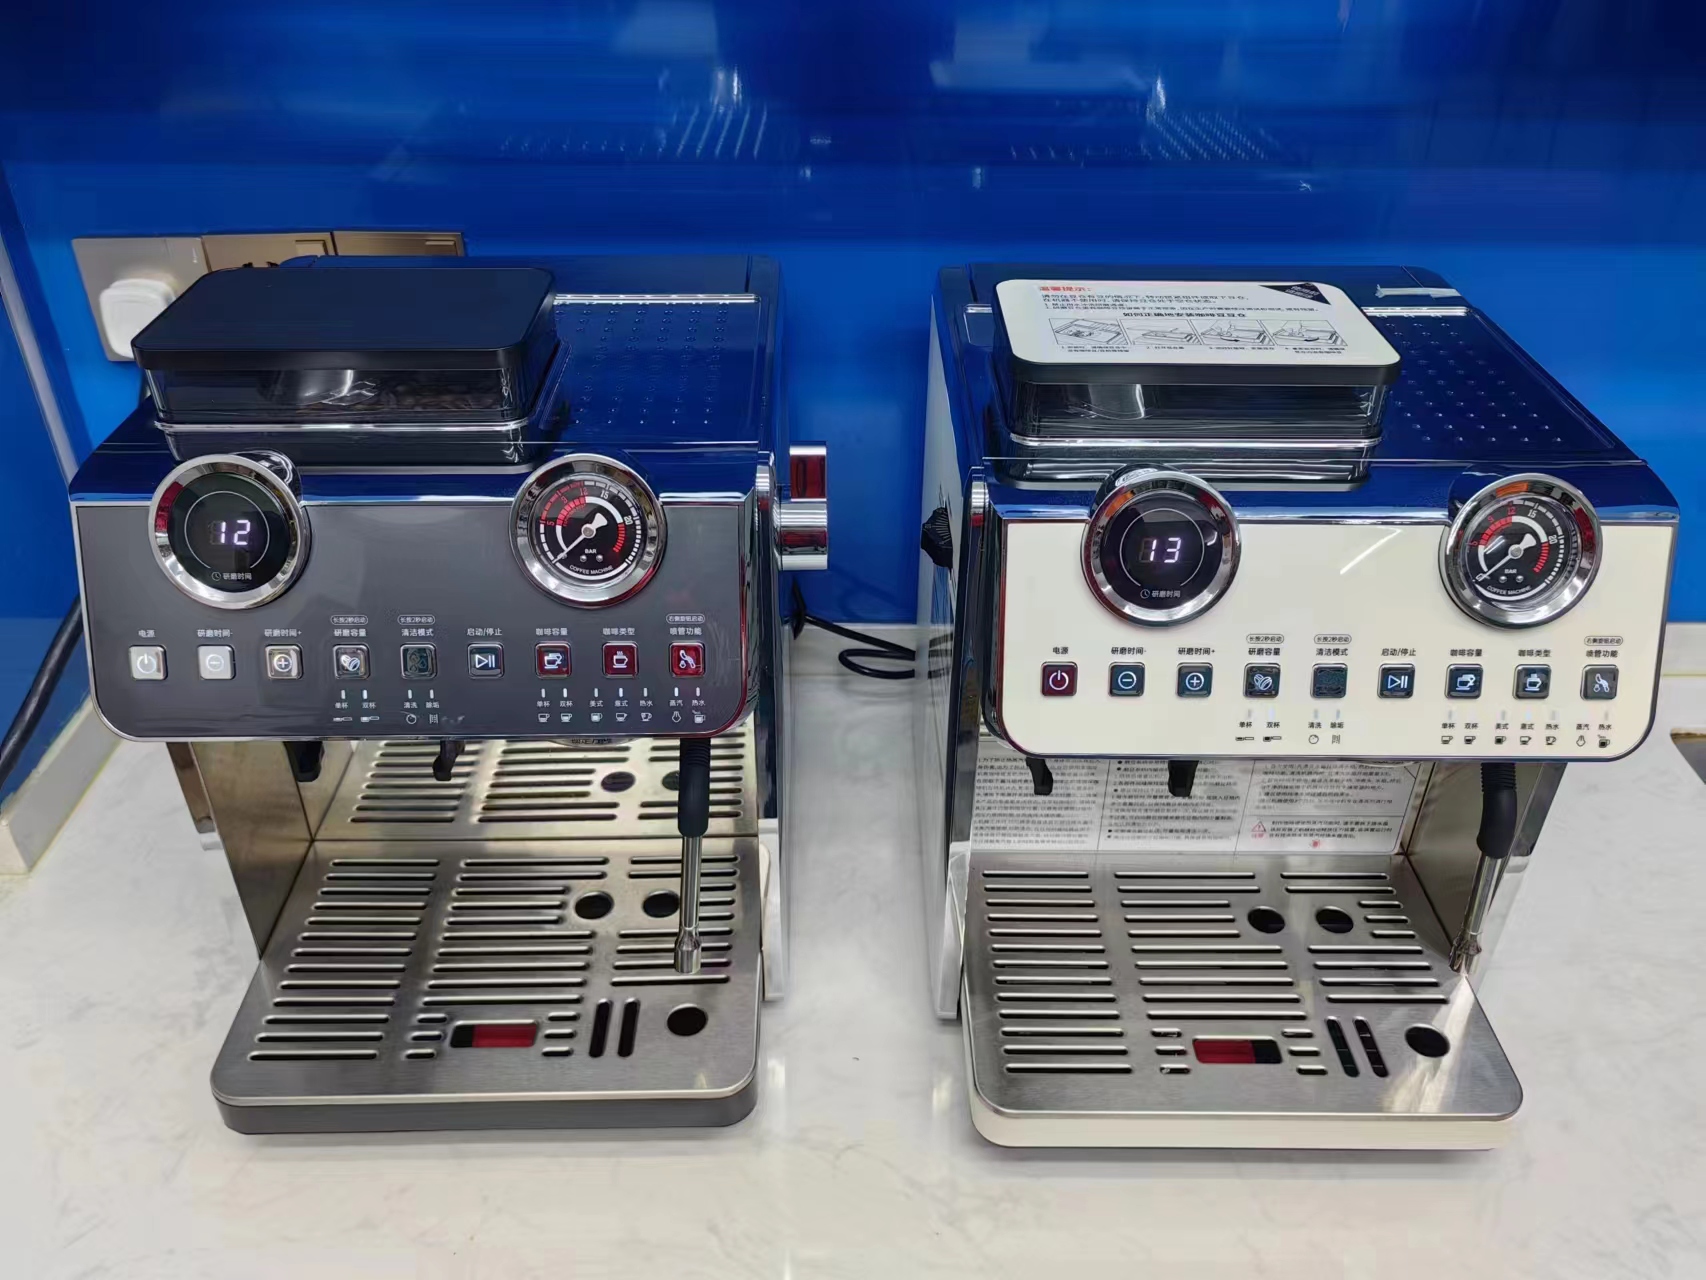 Semi-automatic espresso machine